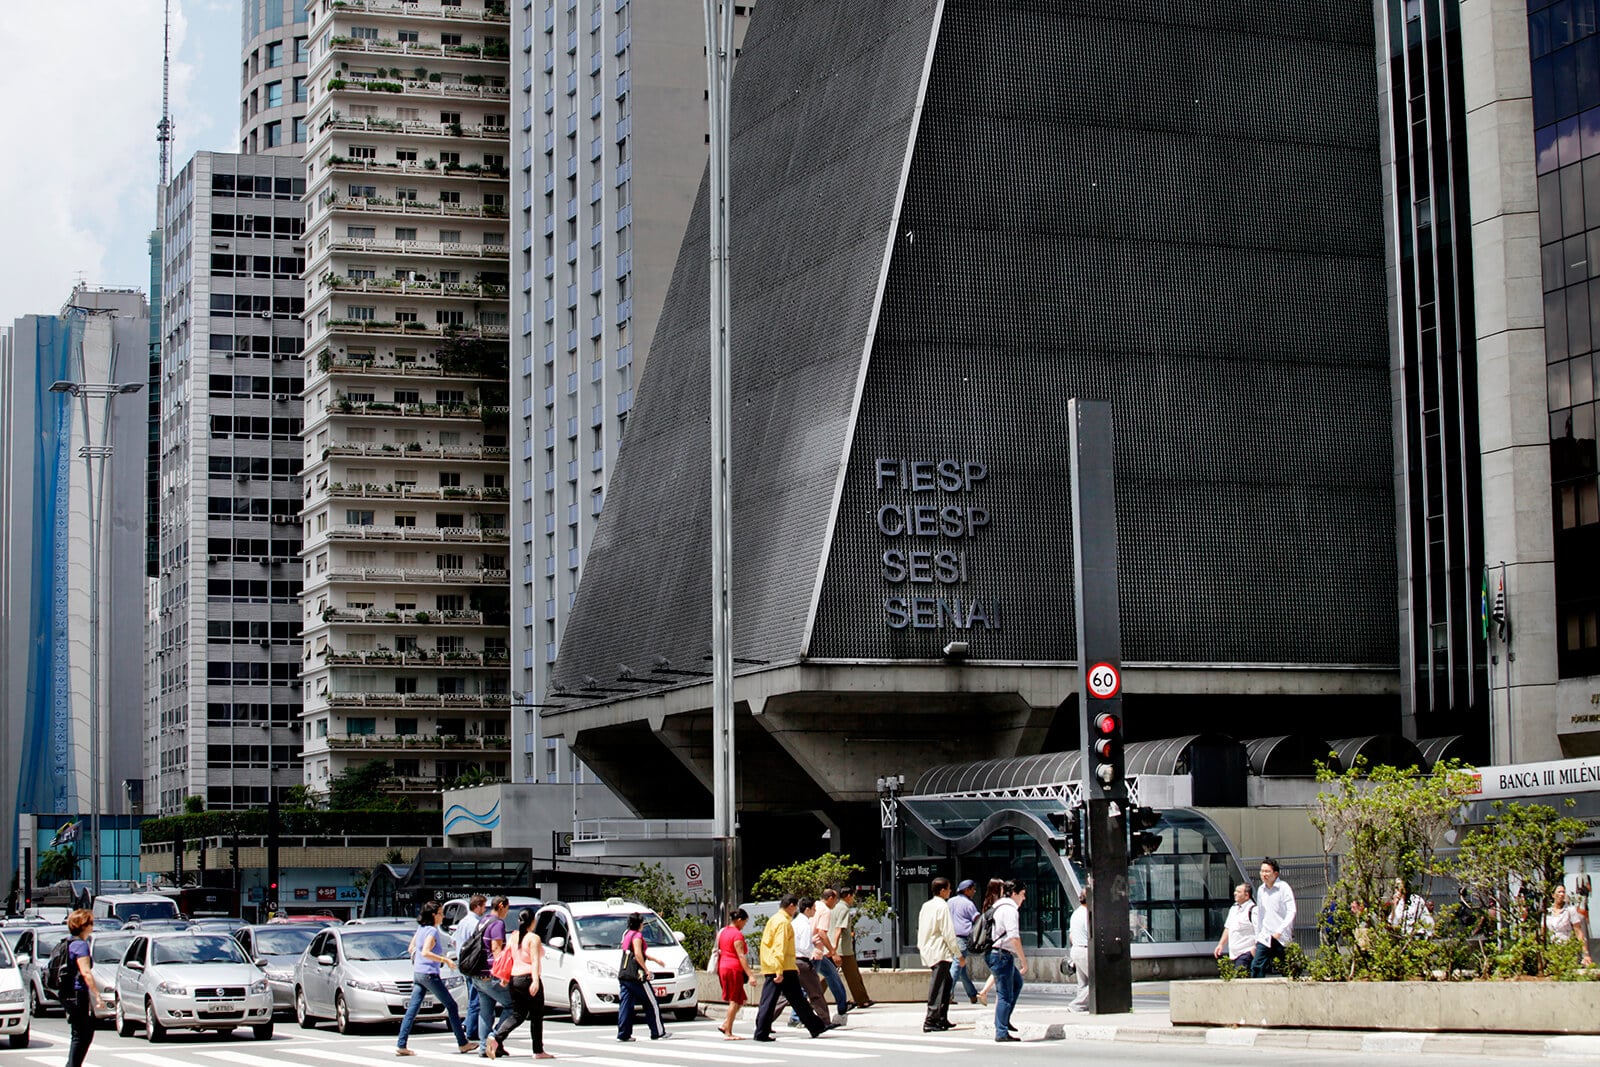 Fotografia do Prédio da Fiesp, visto da Avenida Paulista durante o dia.